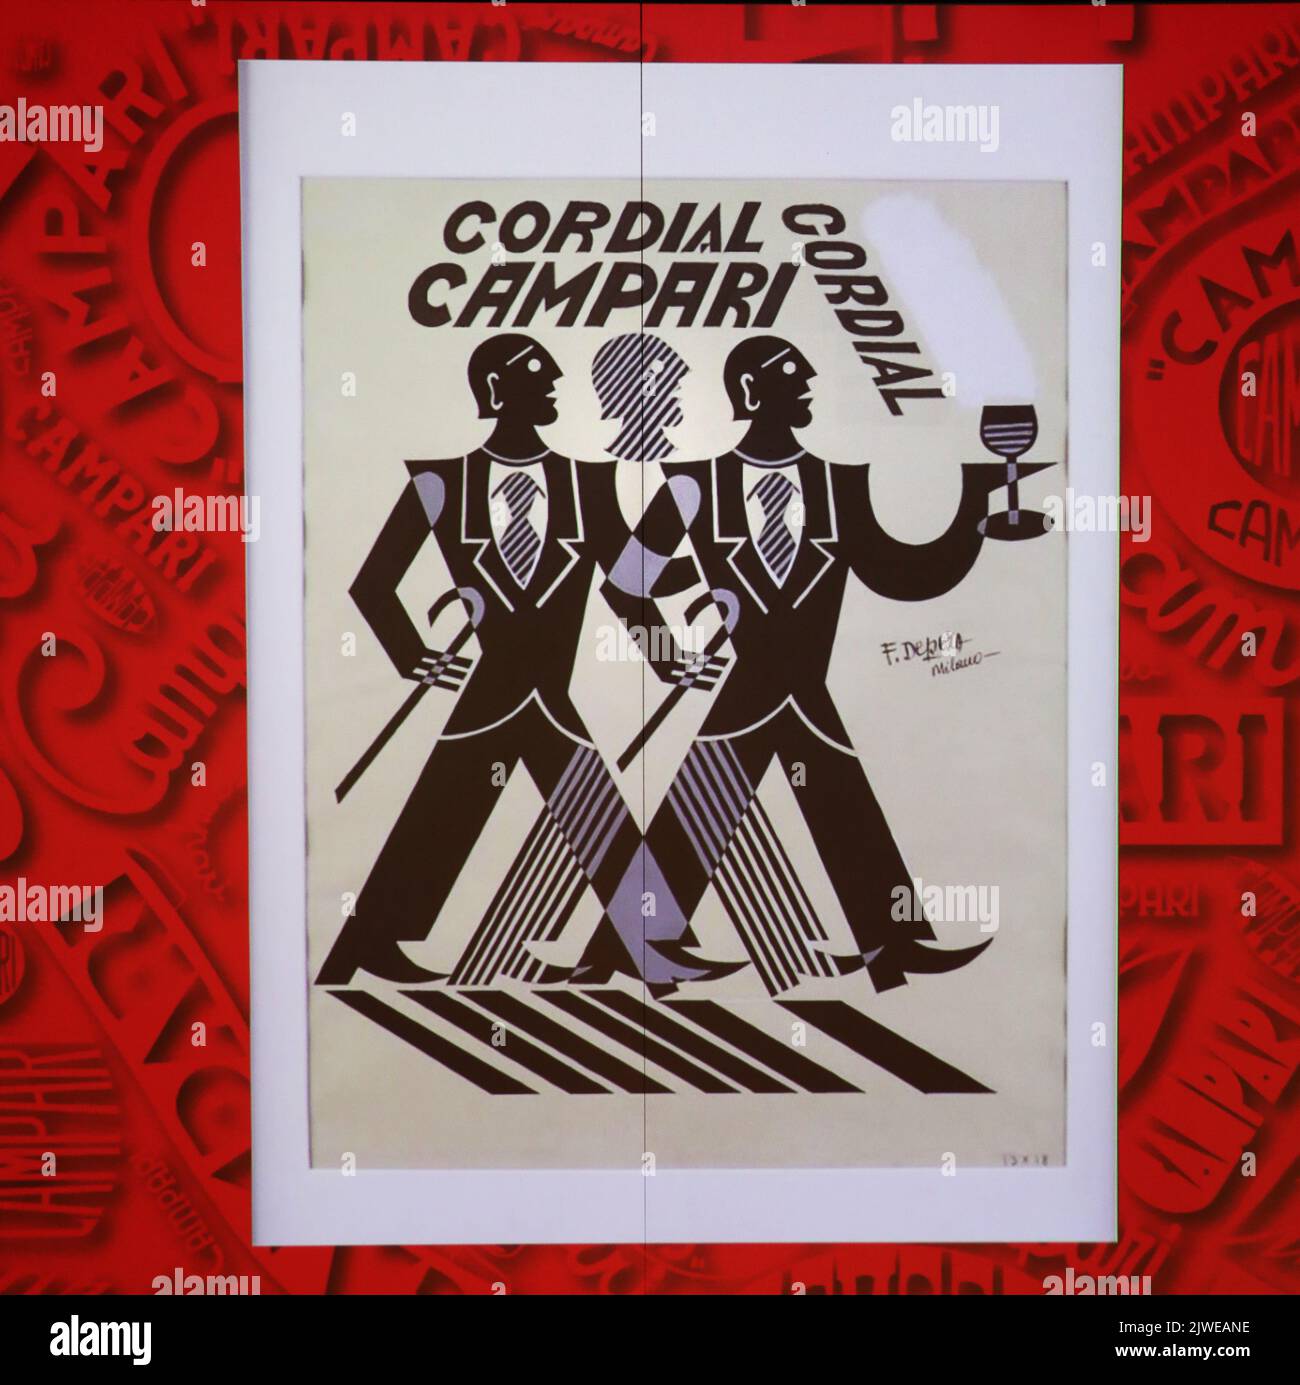 Antico poster di Cordial Campari. Immagine scattata alla Galleria Campari vicino a Milano. Foto Stock